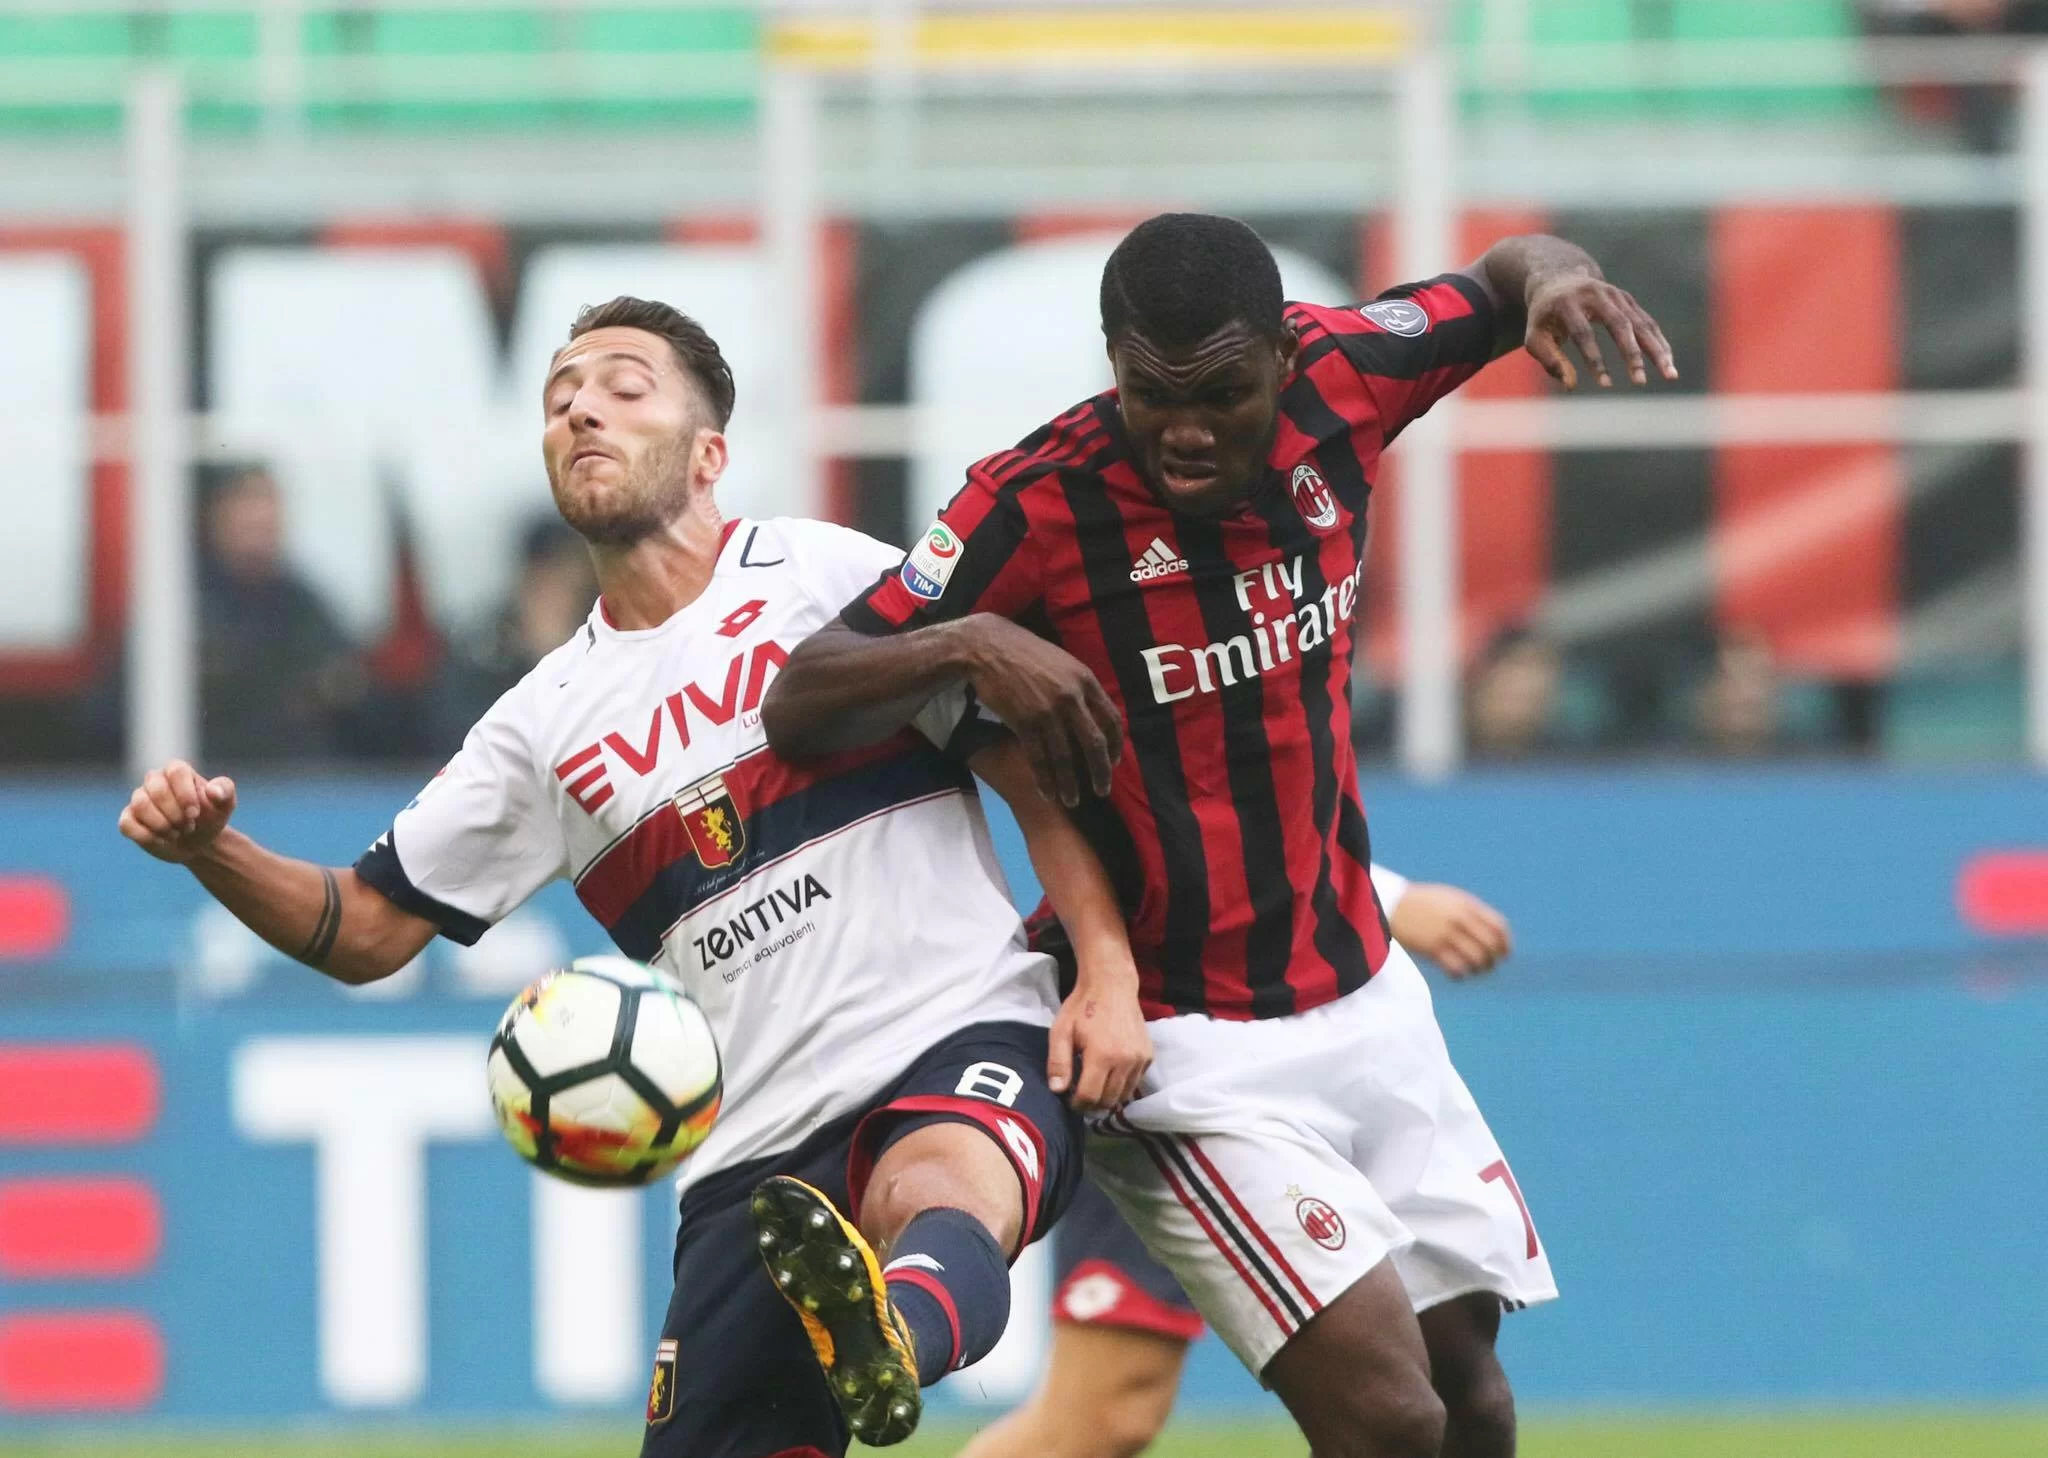 CALCIOMERCATO • Milan, il Genoa vuole Bertolacci a parametro zero